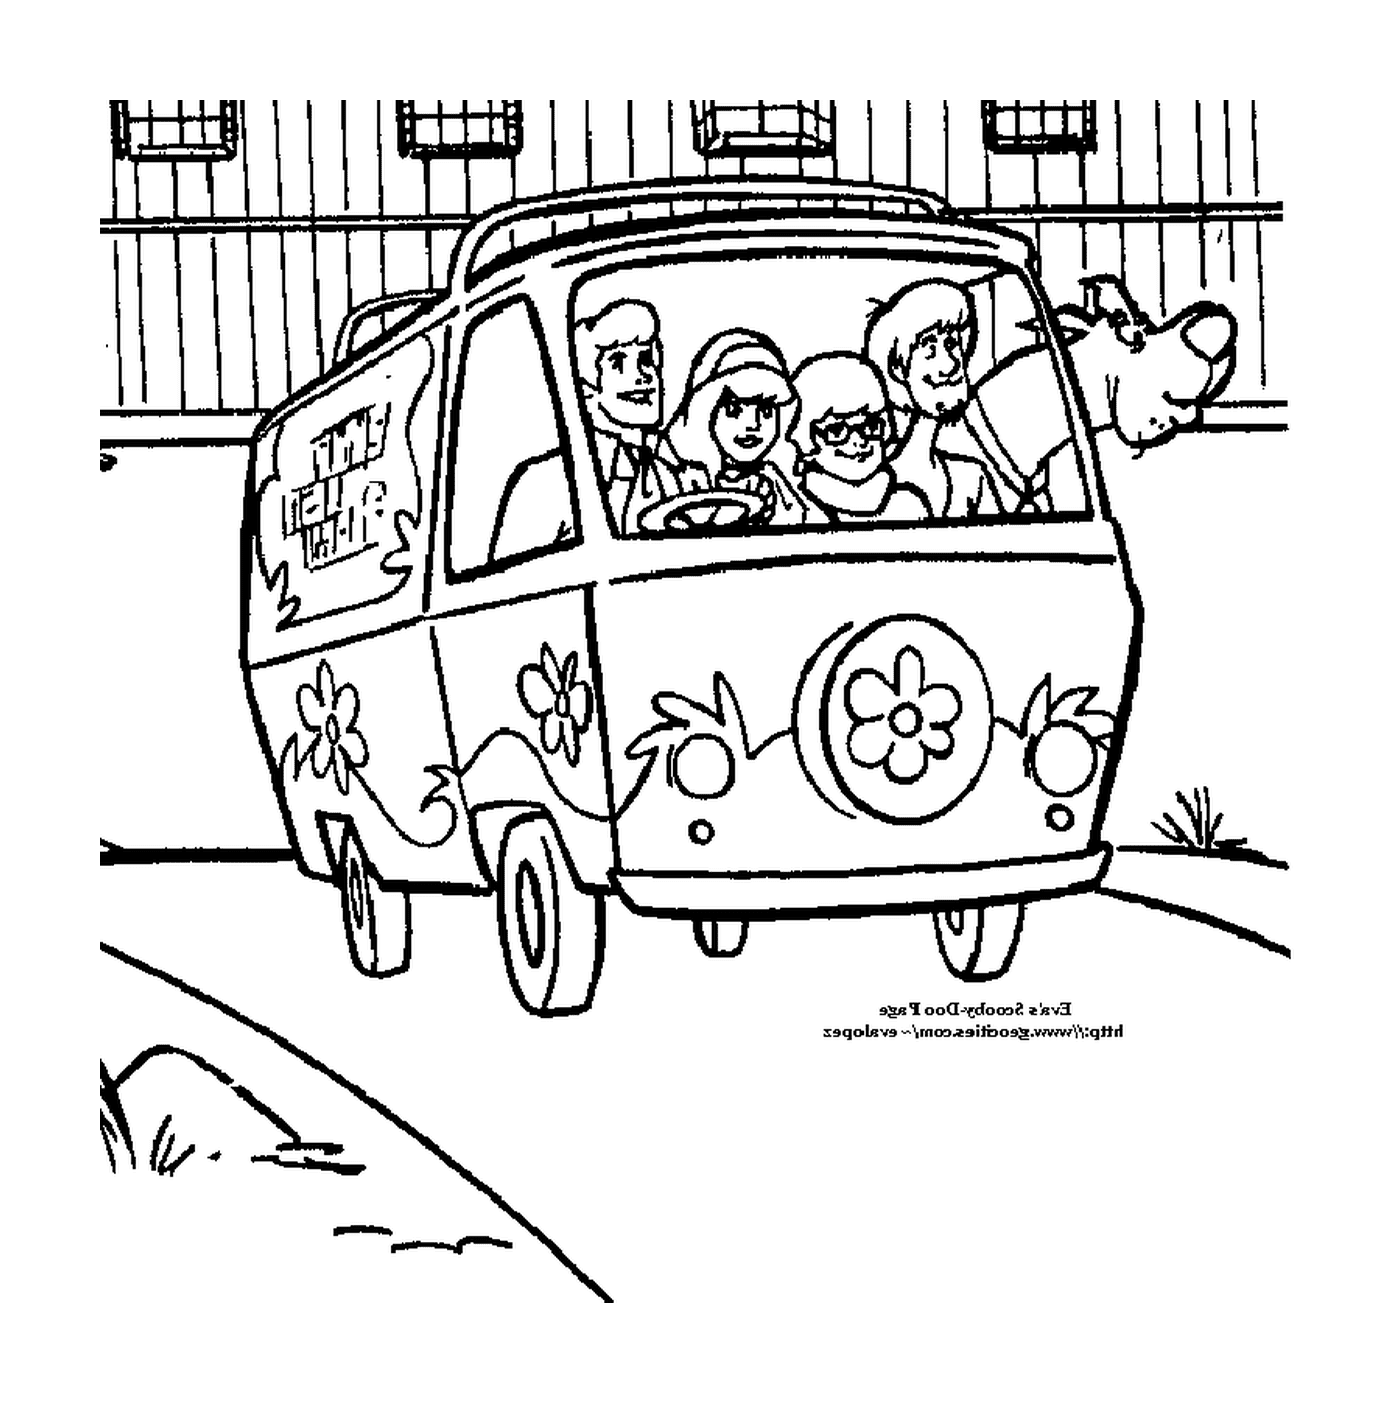  Un furgone con la gente dentro 